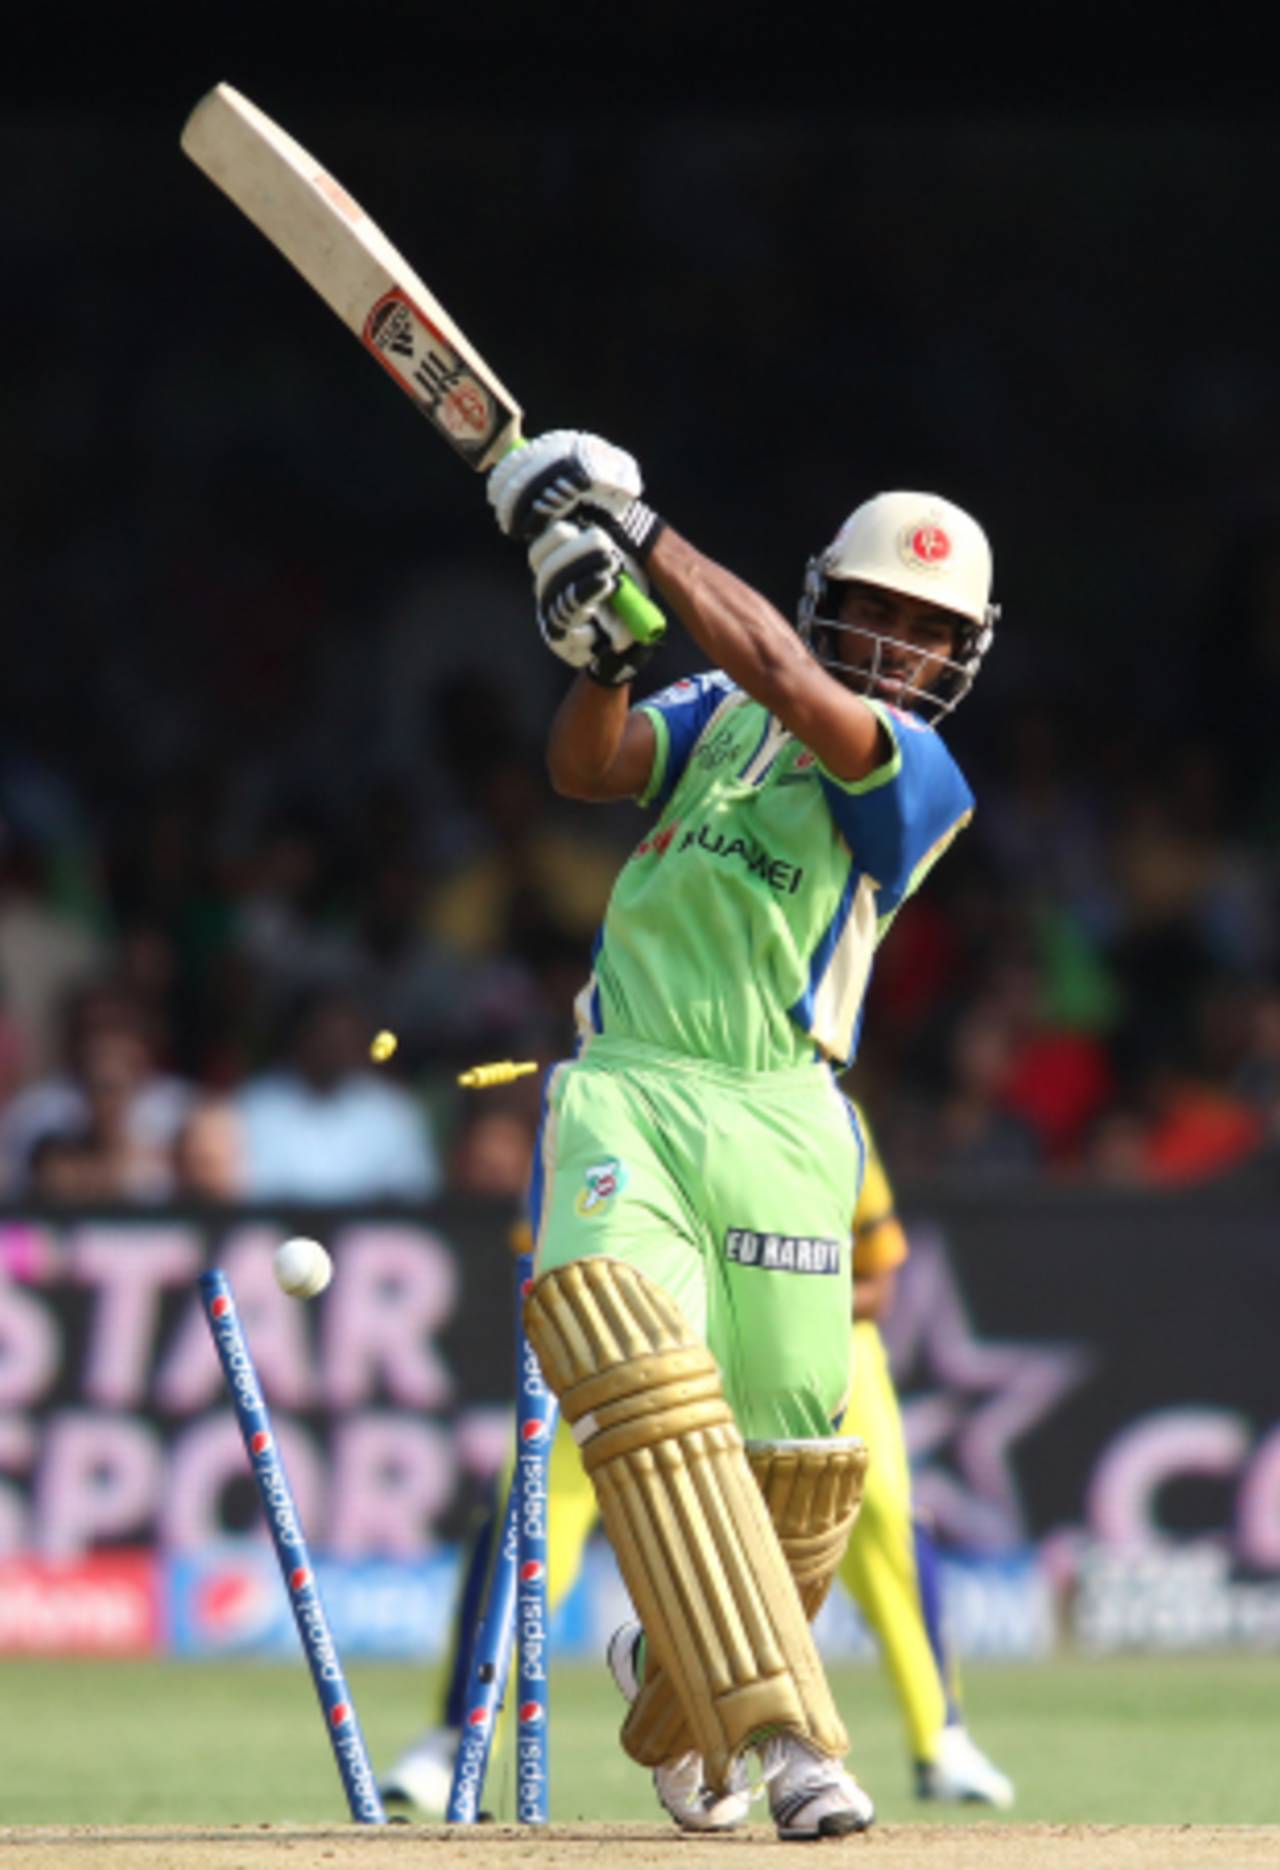 Vijay Zol was bowled for 13, Royal Challengers Bangalore v Chennai Super Kings, IPL 2014, Bangalore, May 24, 2014